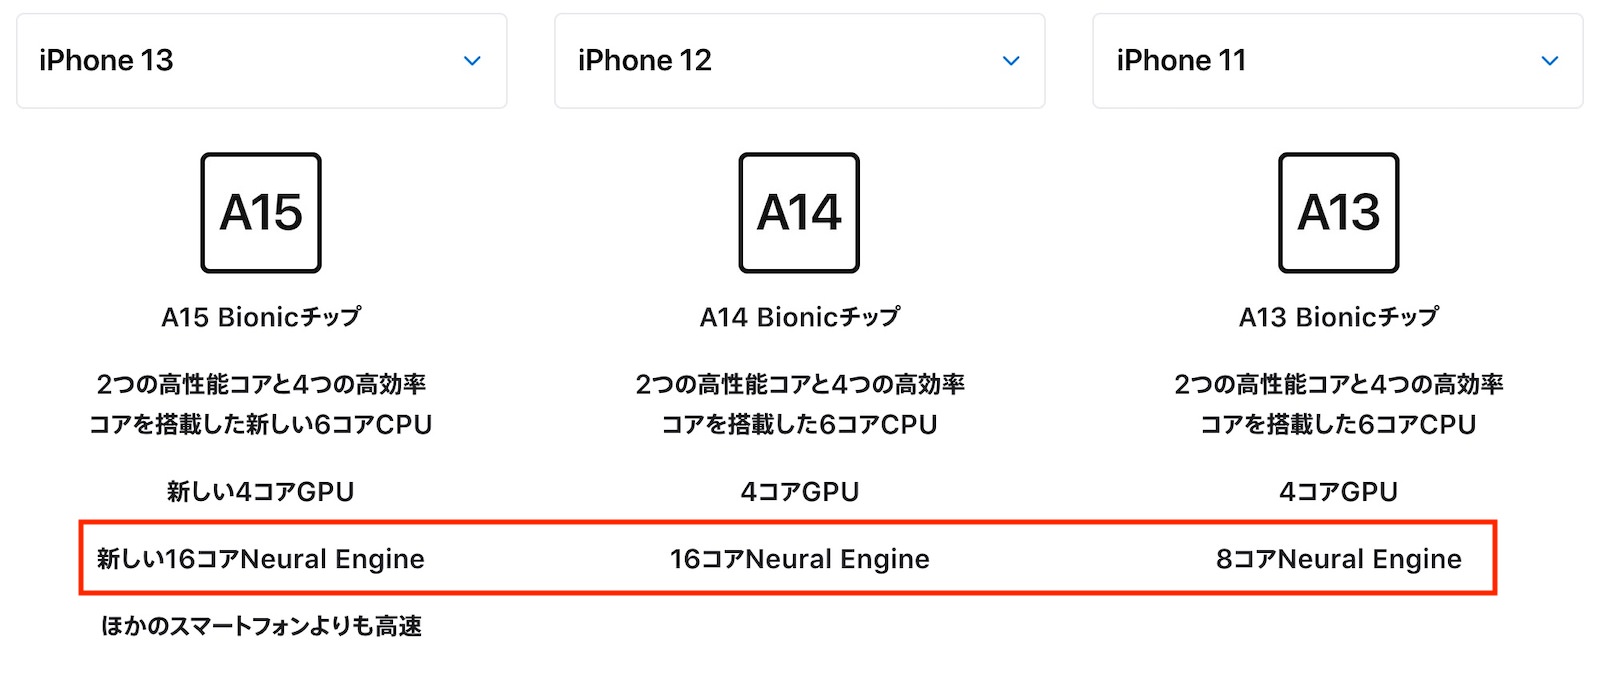 Iphone13 12 11 a chip comparison